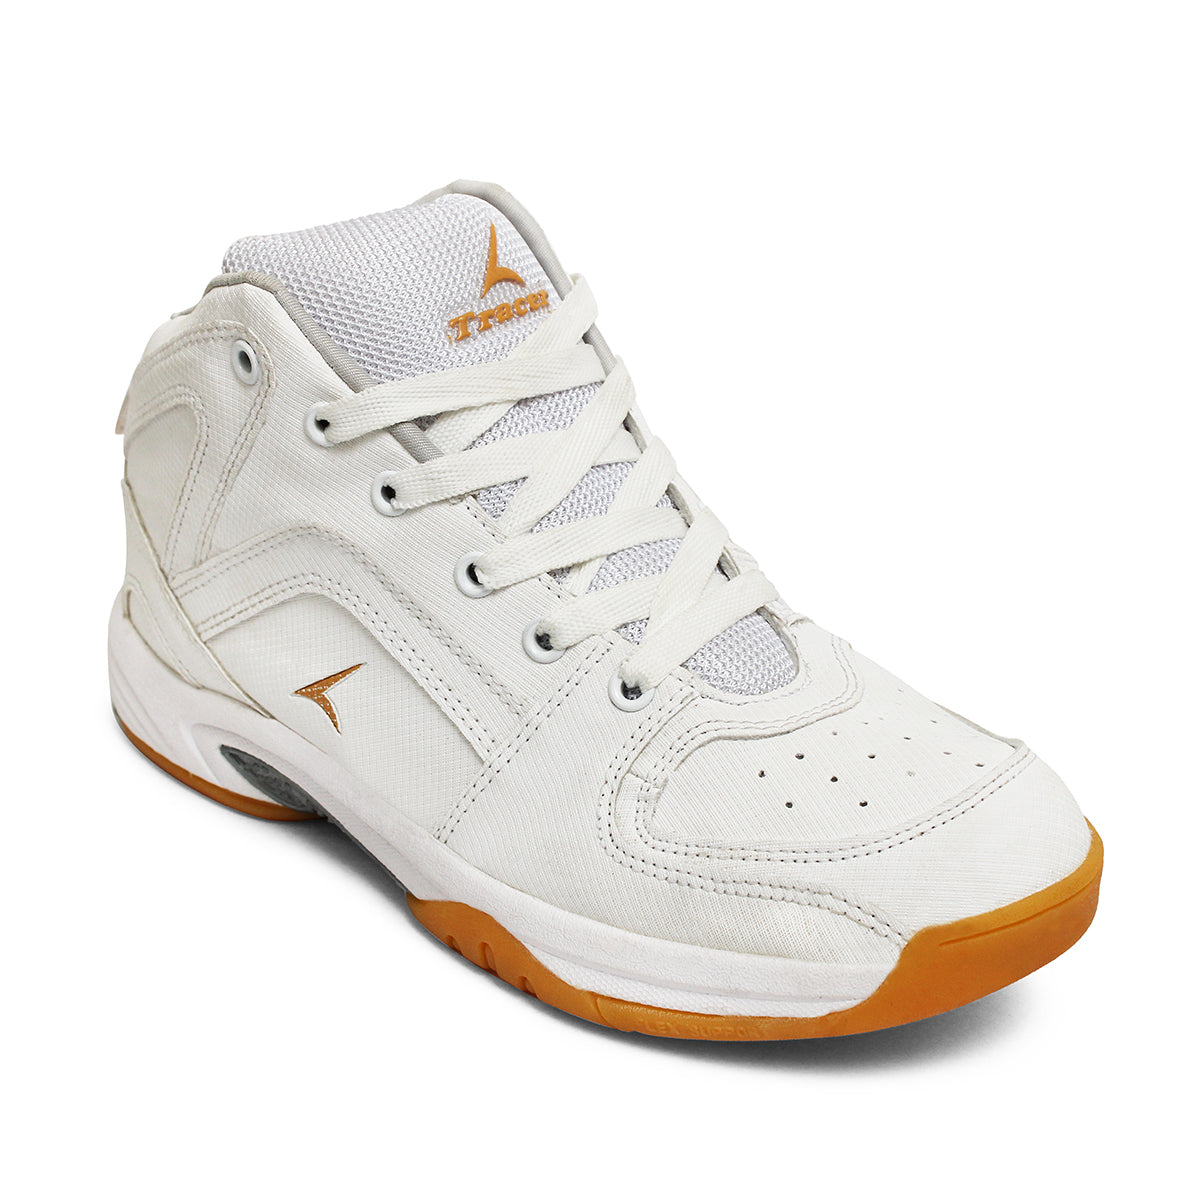 KD Trey 5 X Basketball Shoes. Nike.com